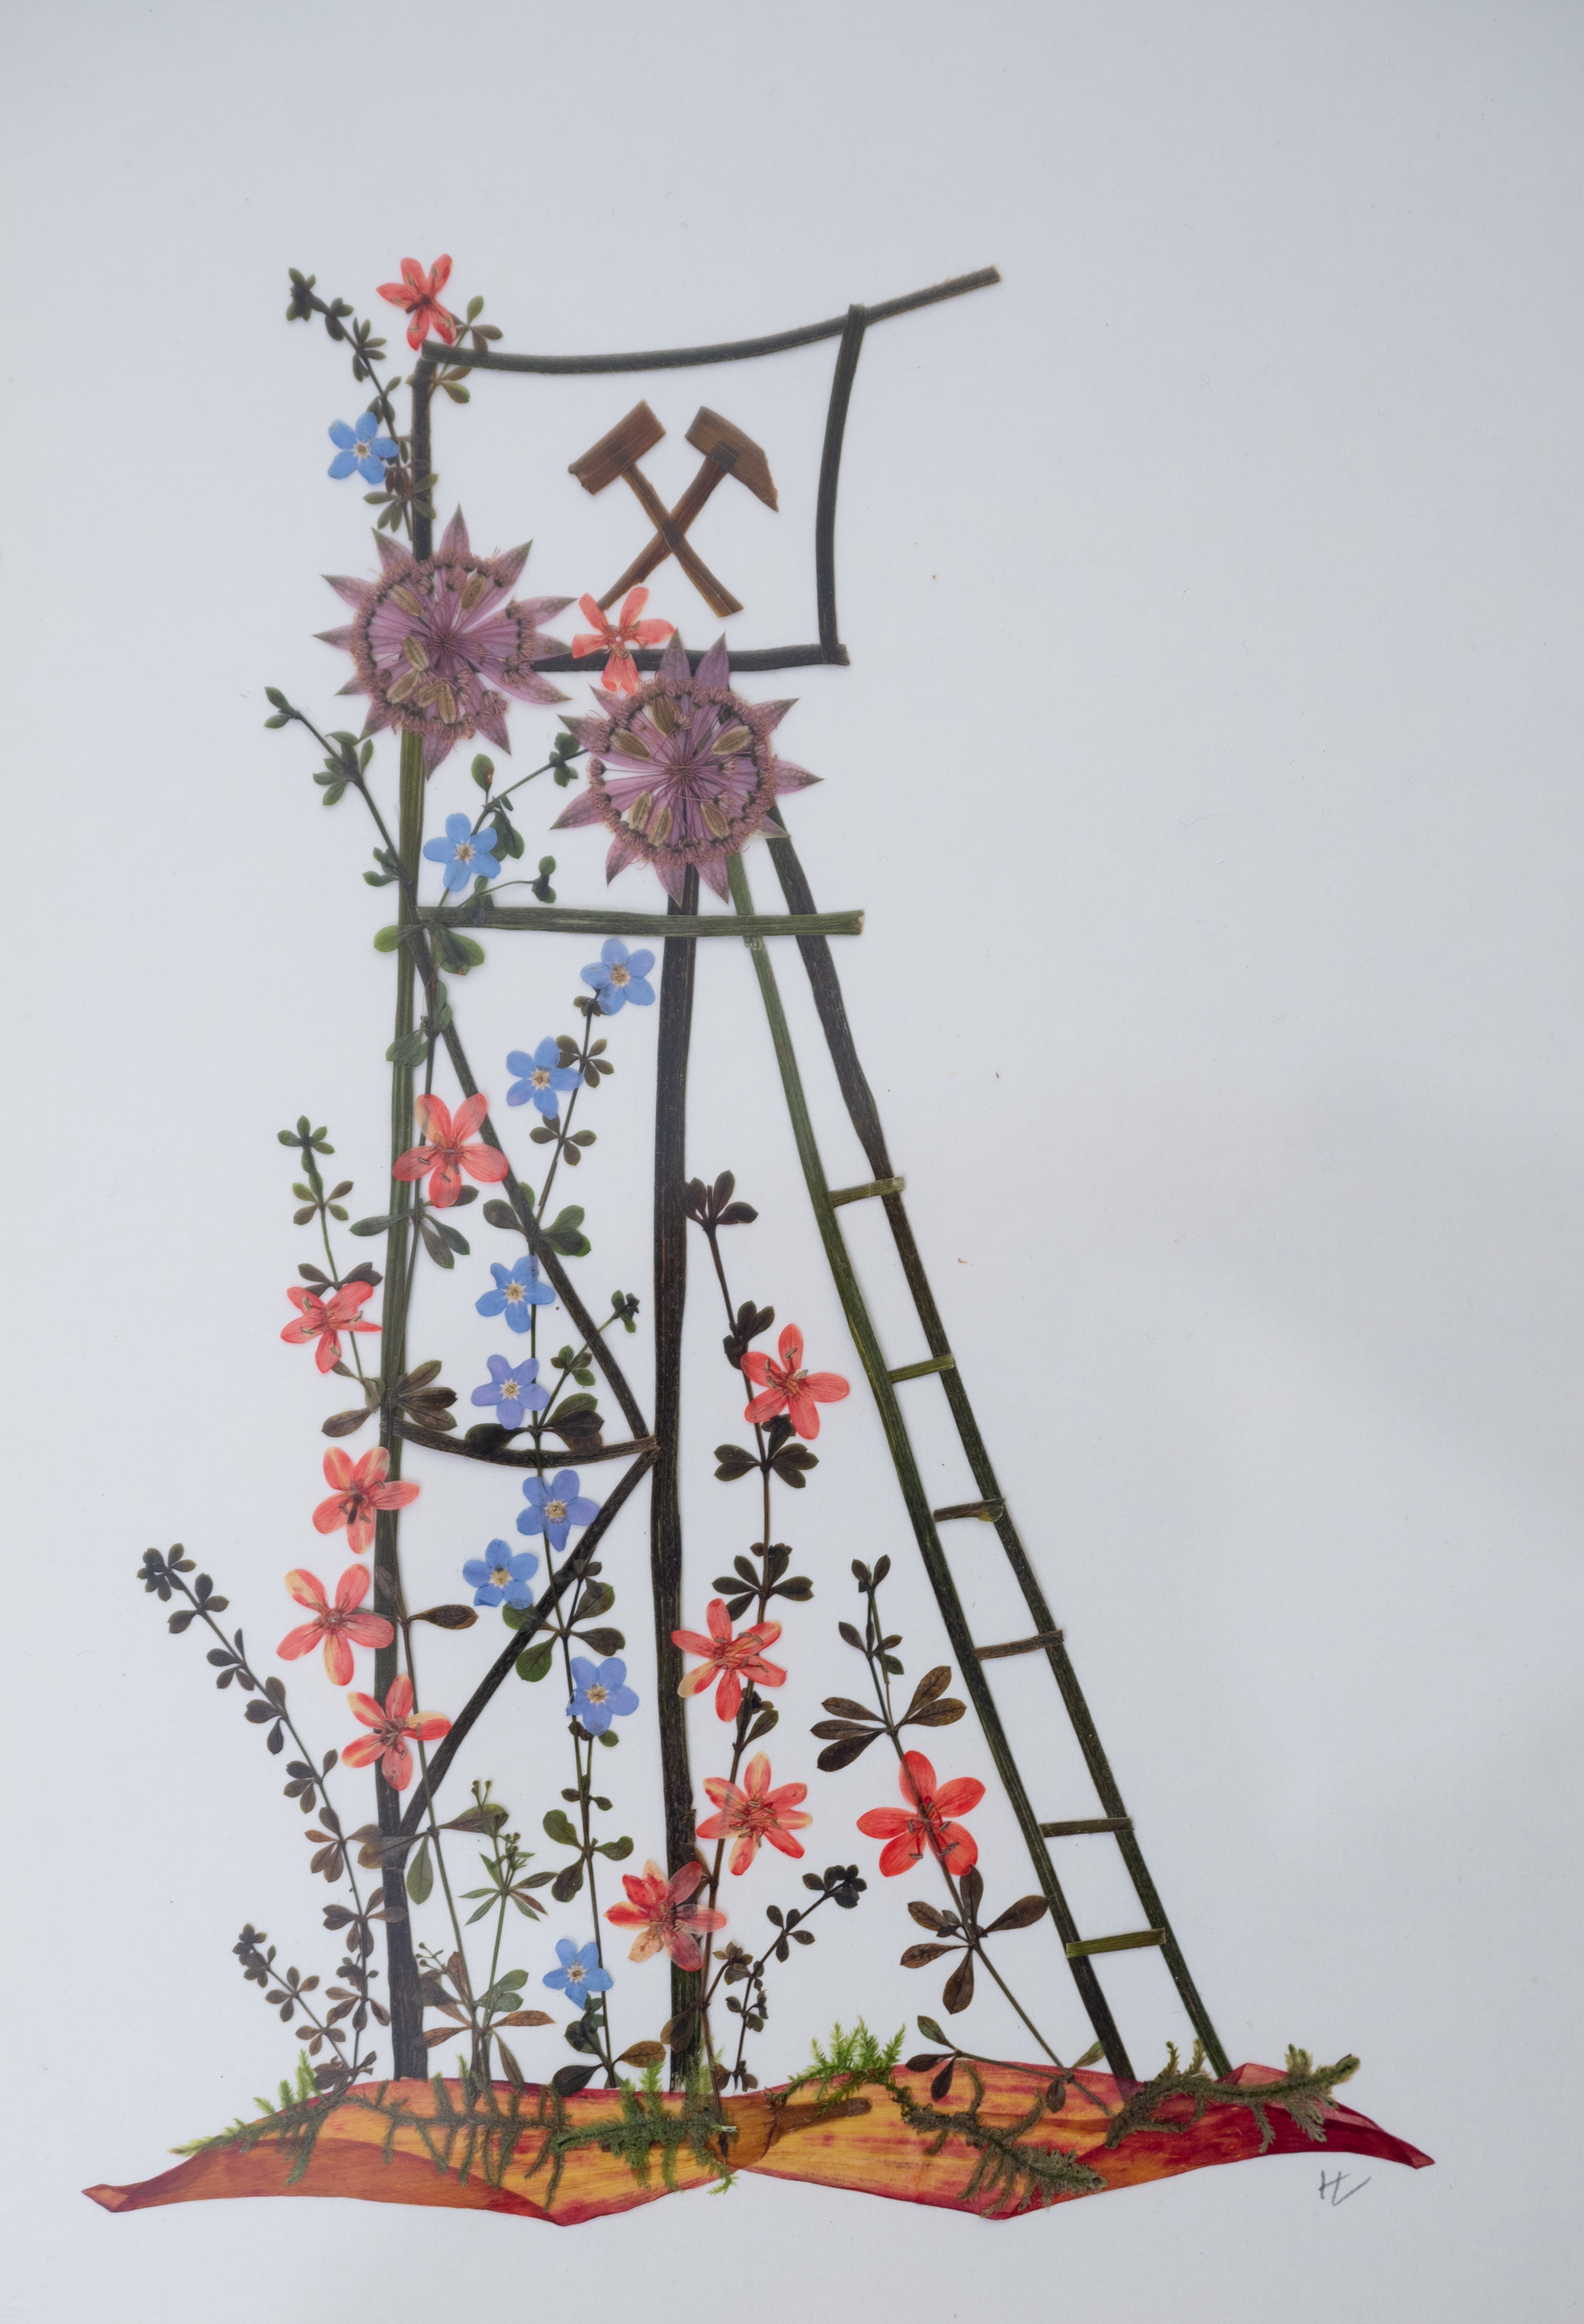 Darstellung des Förderturms der Zinngrube Ehrenfriedersdorf (hoher Turm aus Metallgerüst mit Förderrädern) mithilfe von verschiedenfarbigen und großen Blüten und -anderen Pflanzenteilen (Stängel, Blätter). 